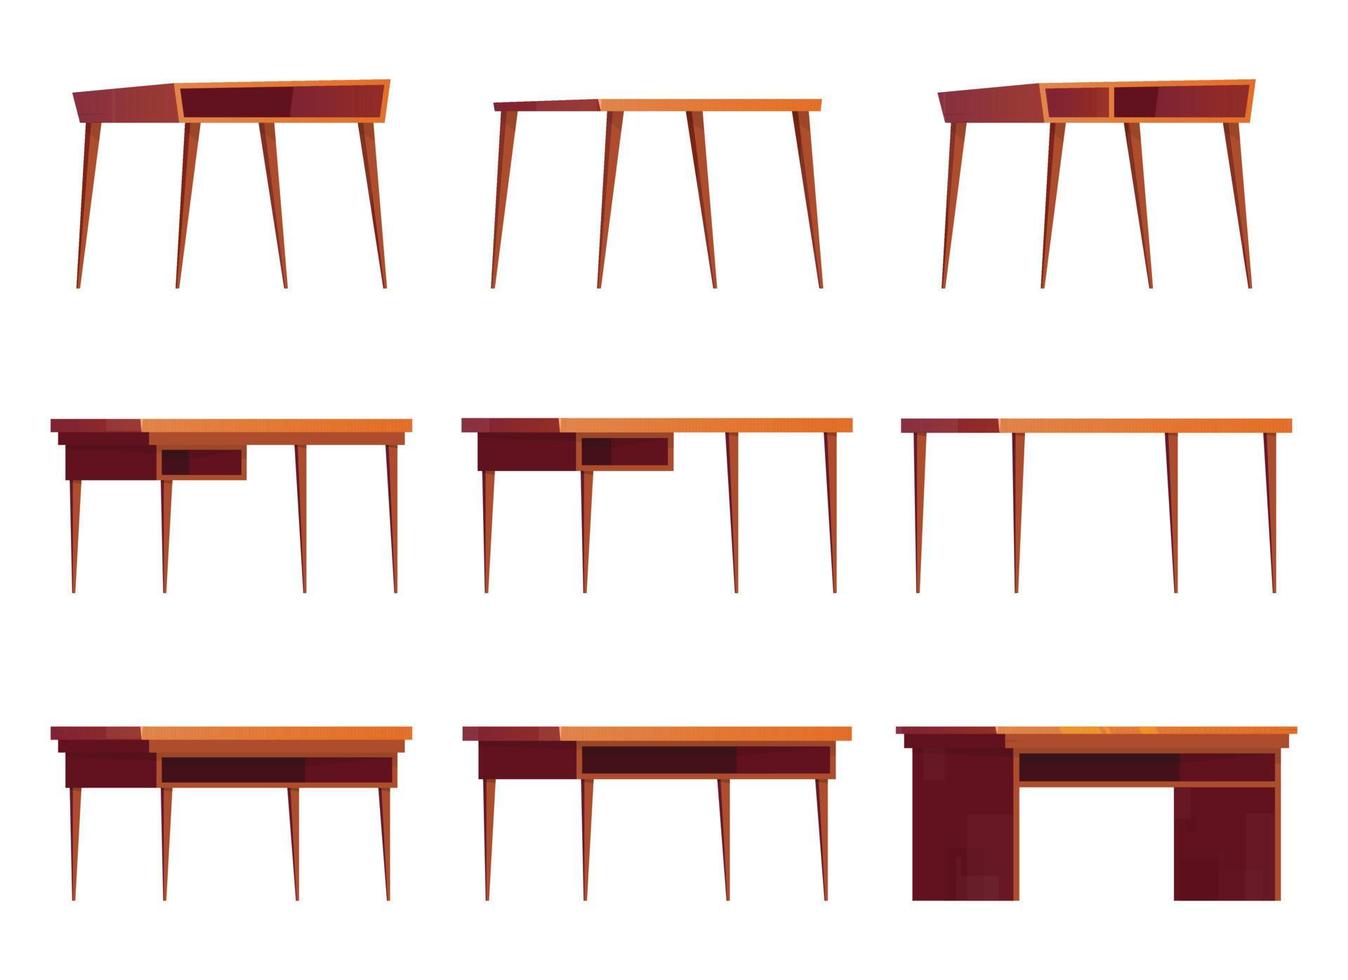 escritório de madeira mesas para trabalhar. coleção do desenho animado de madeira mesas, vetor ilustração isolado em branco